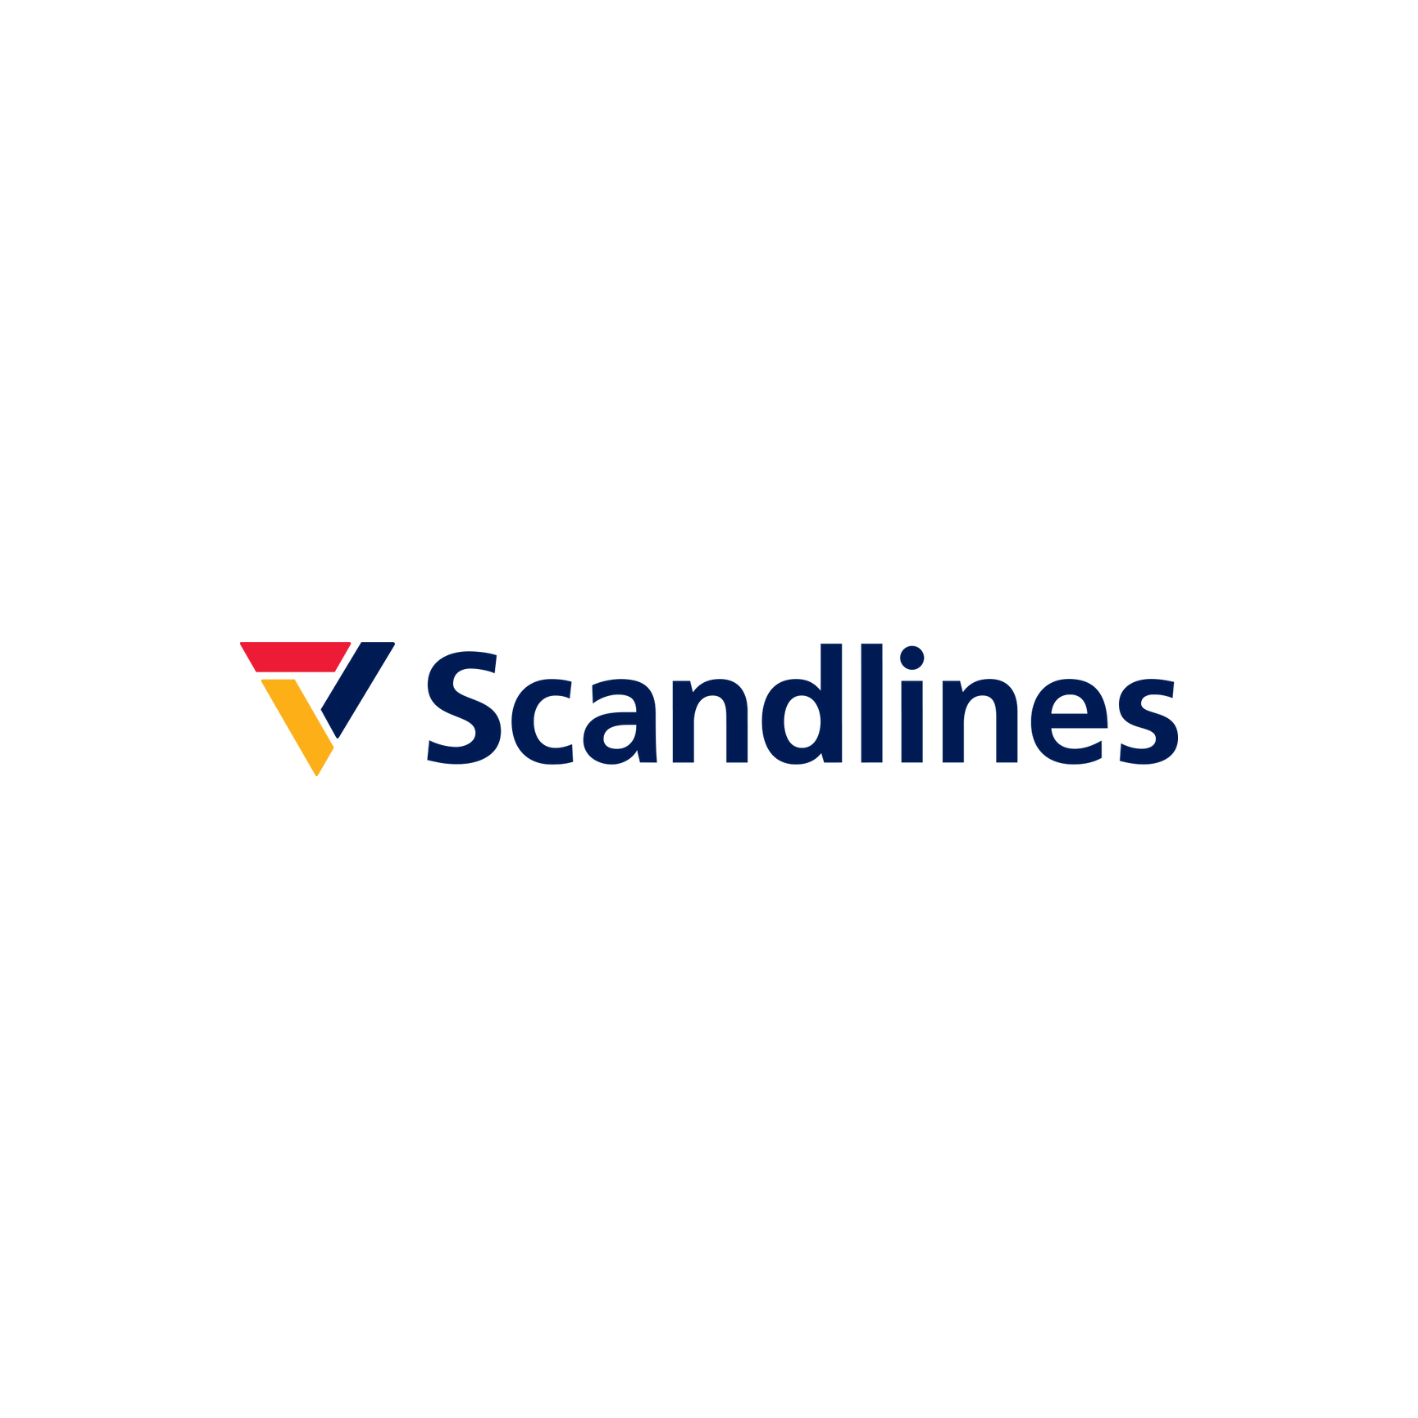 Logotip scandlines-a